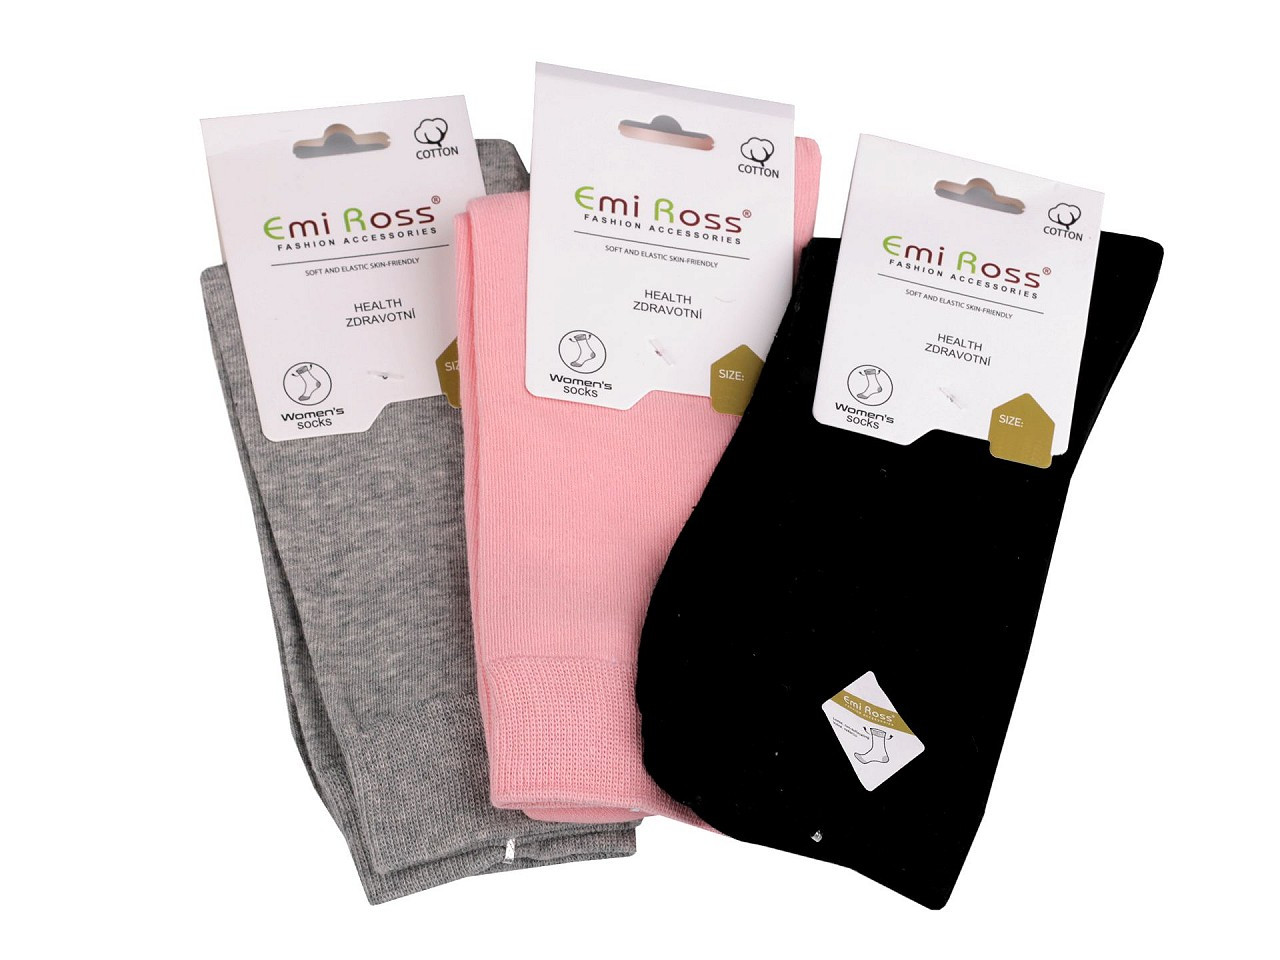 Dámské bavlněné ponožky Emi Ross, barva 16 (39-42) mix